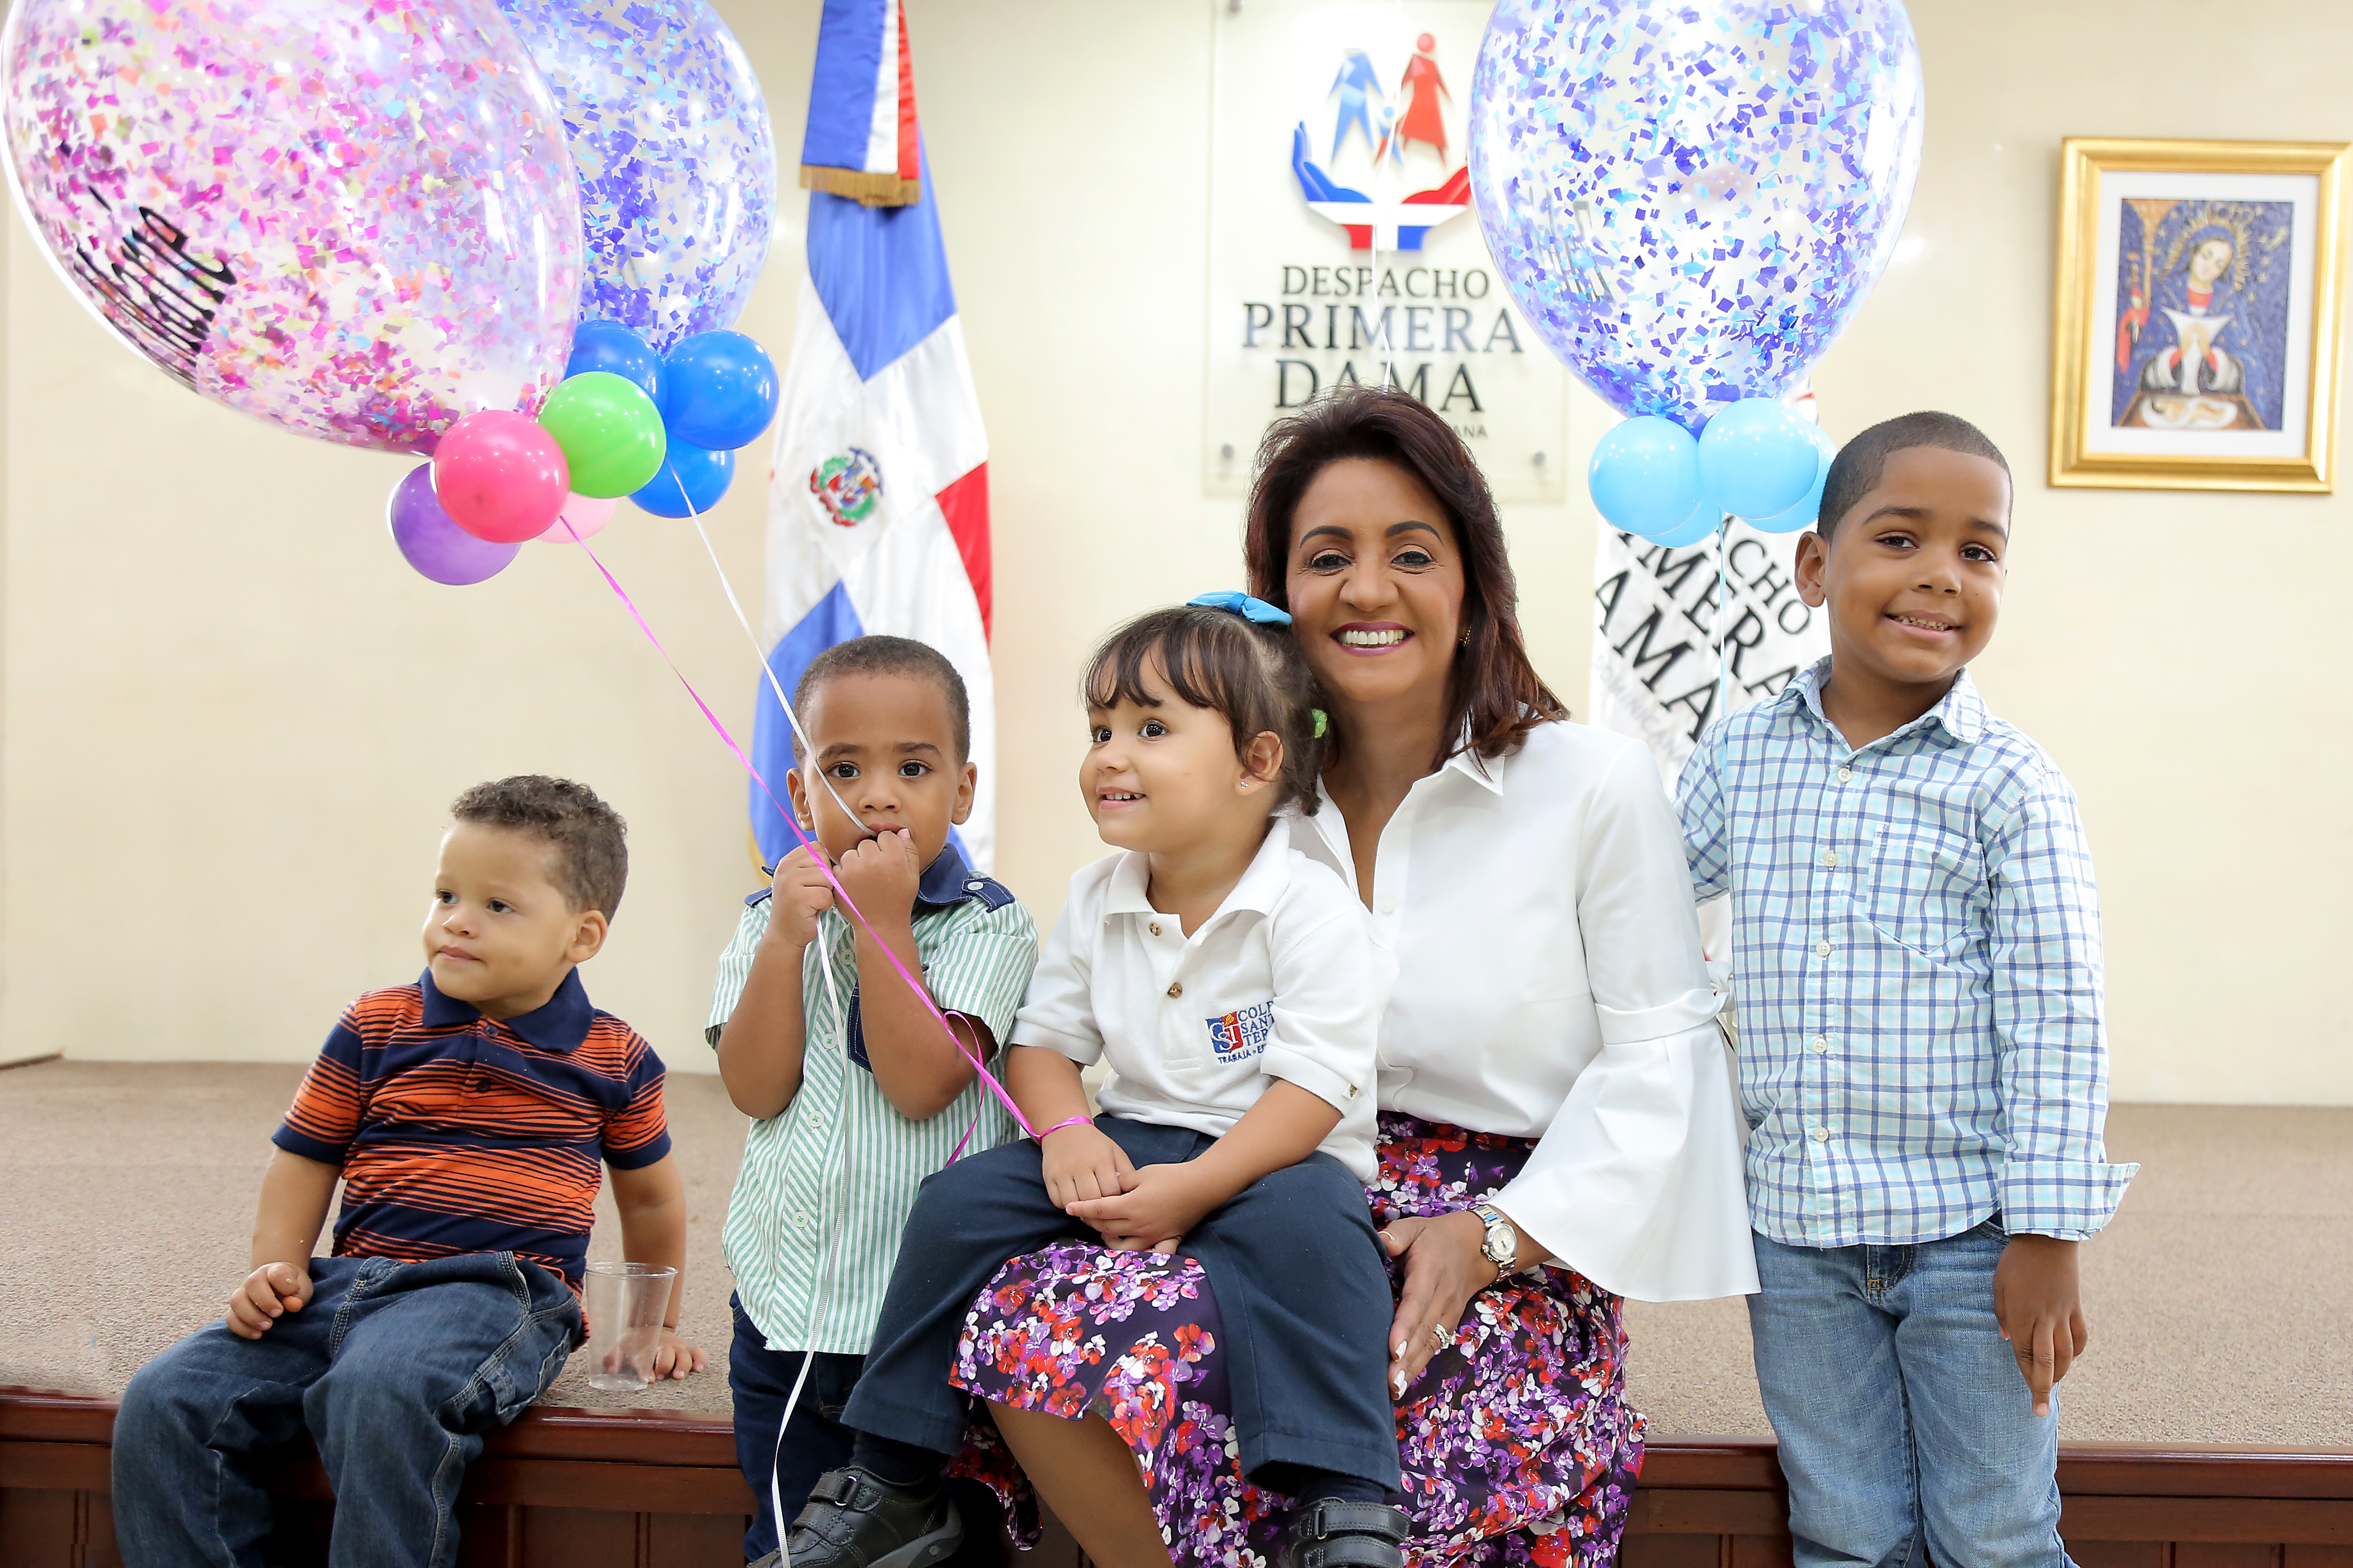  Viaje de Esperanza: Despacho Primera Dama lleva a Cuba cuatro niños a cirugías que les permitan oír por primera vez